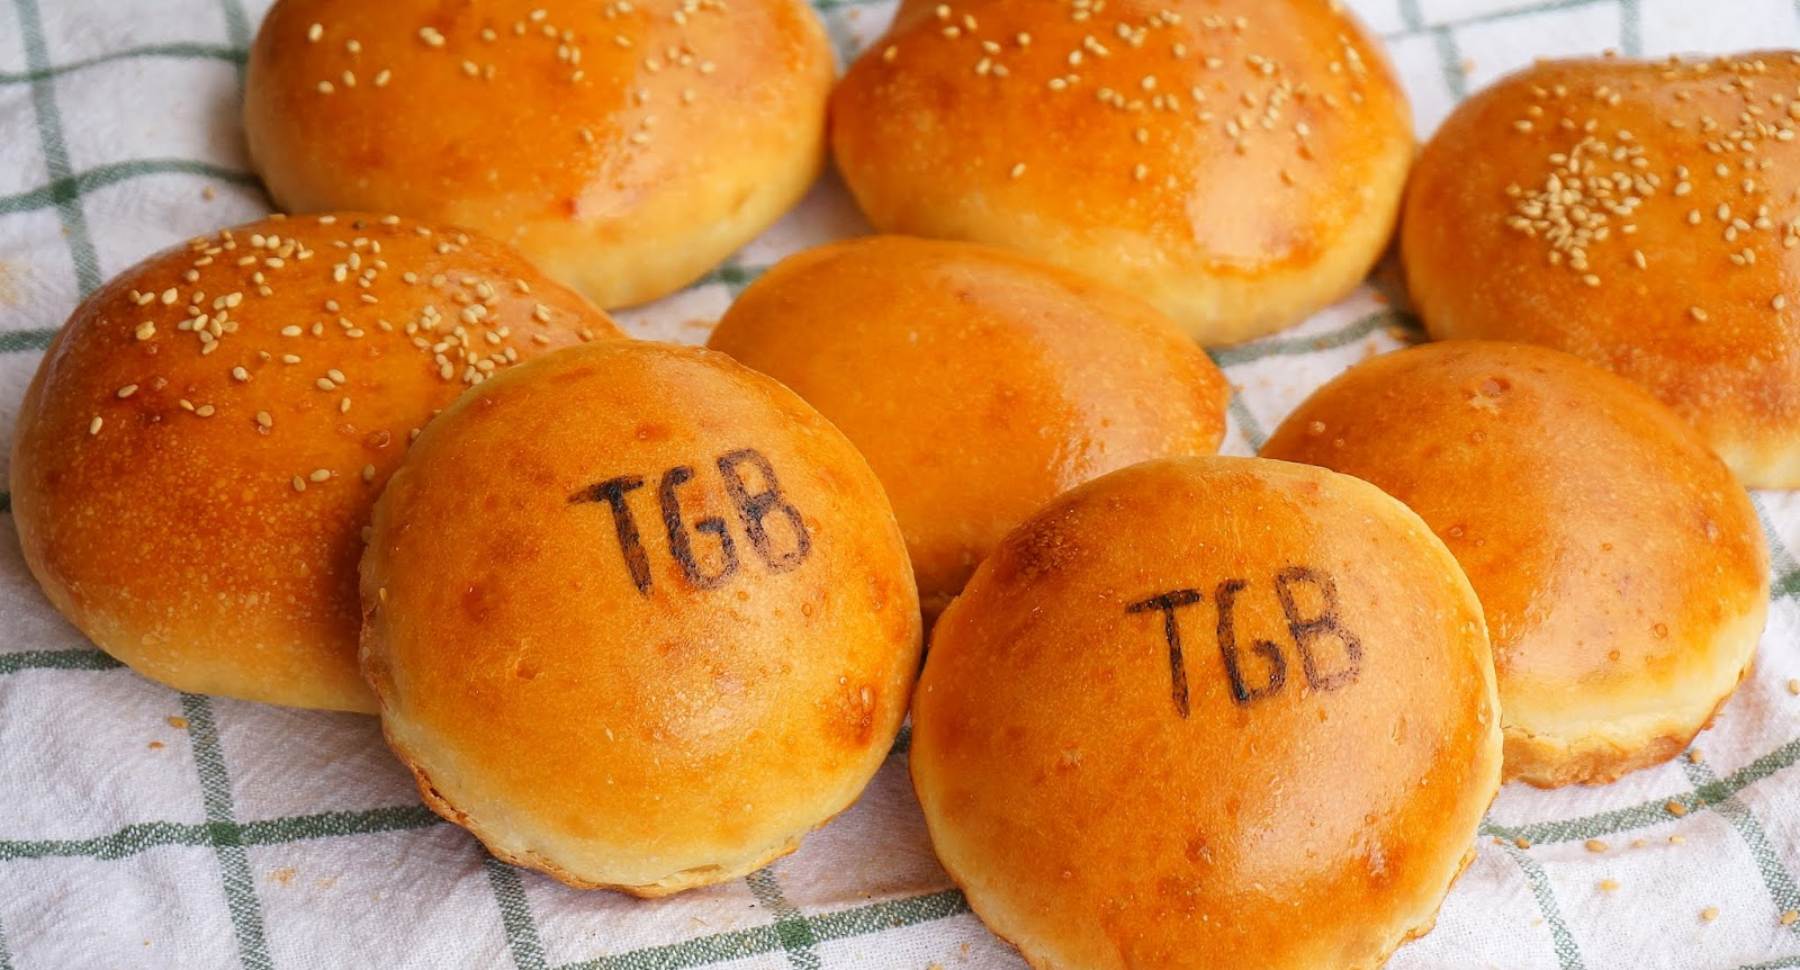 Pan de hamburguesa de TGB